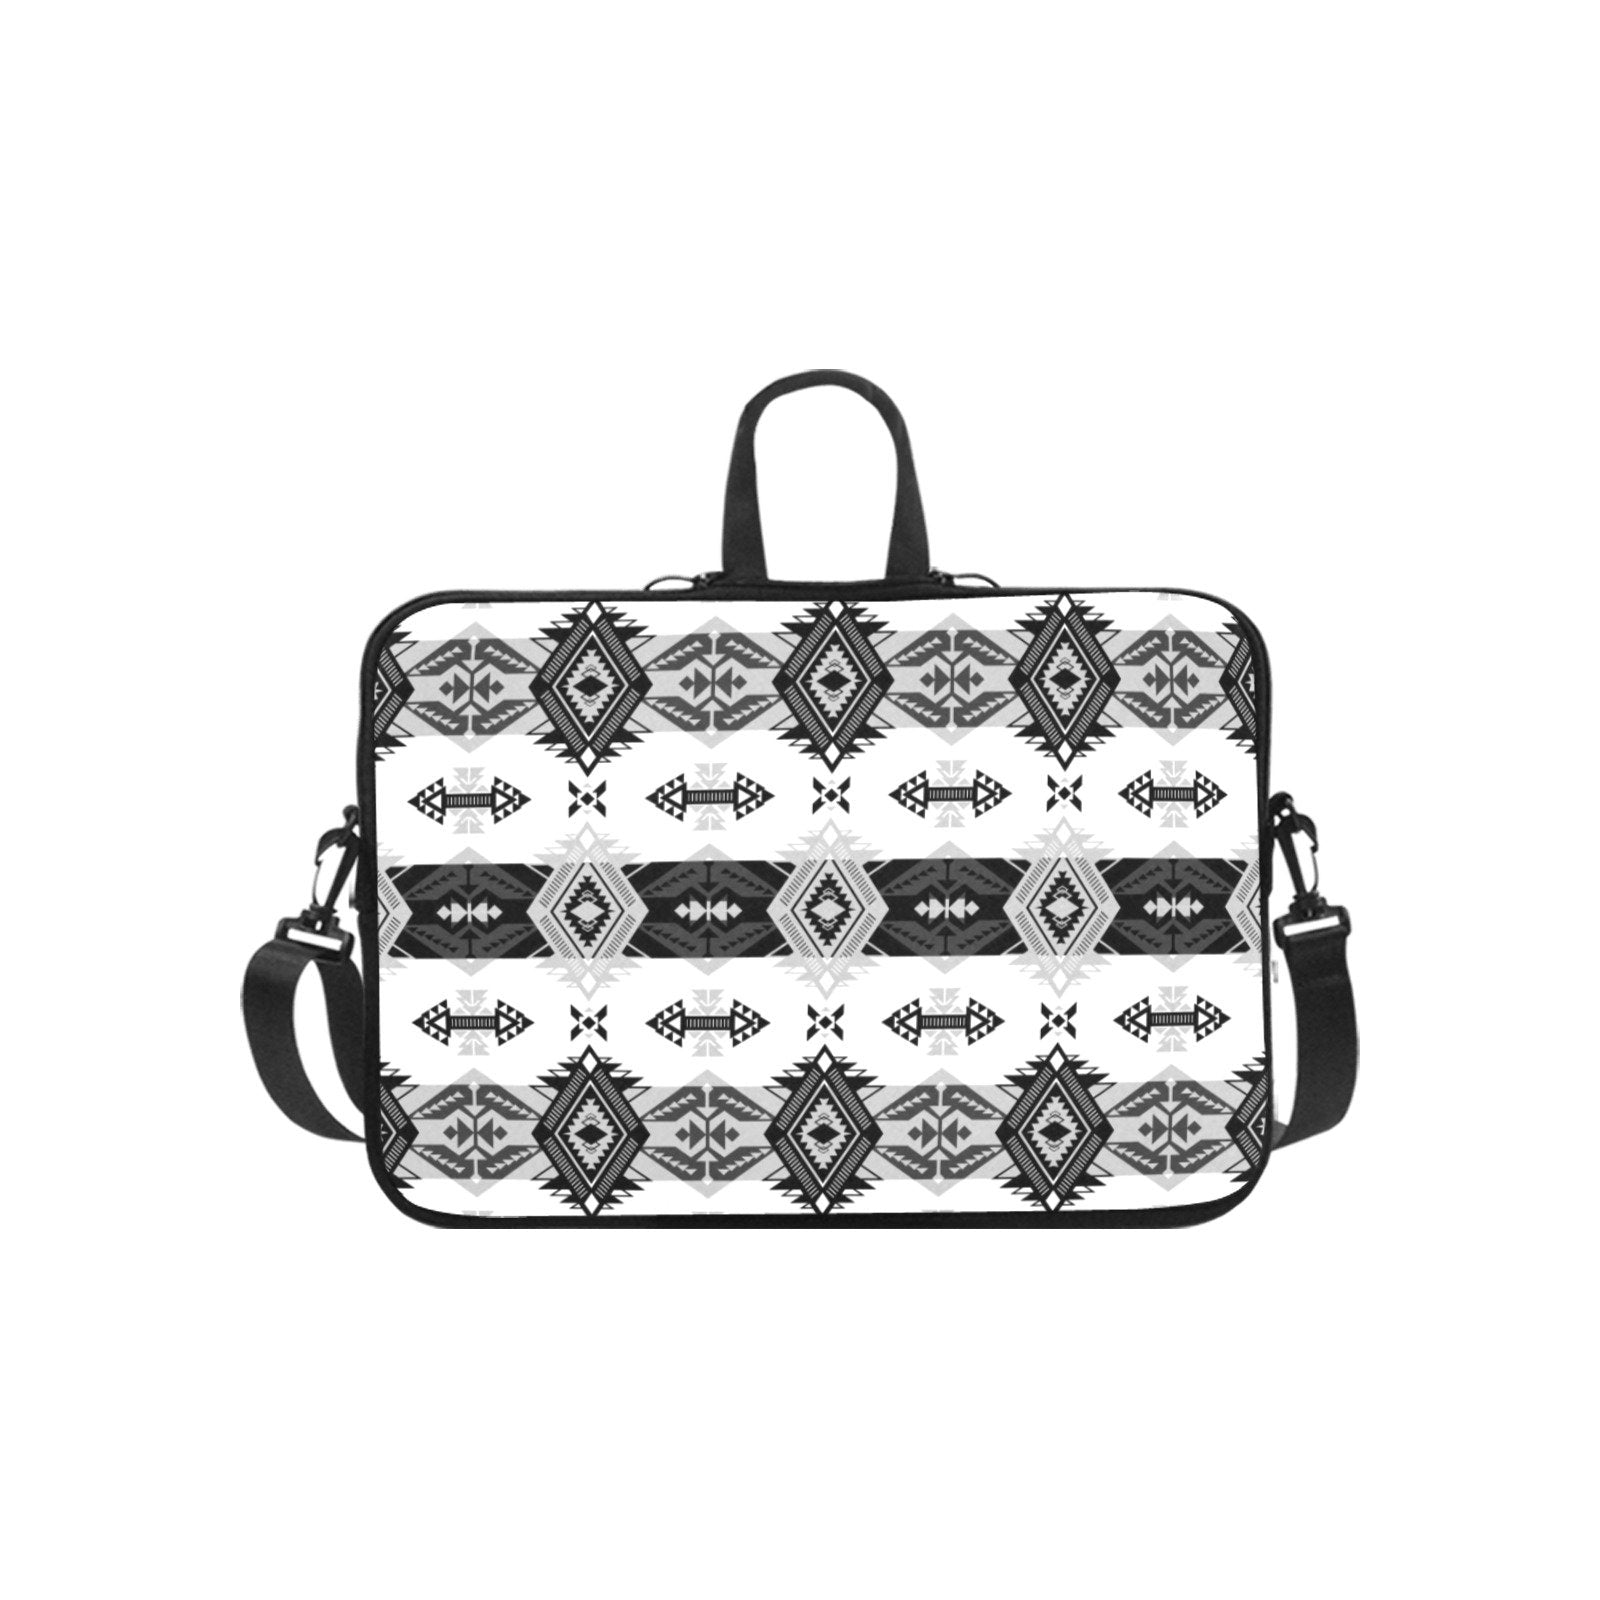 Sovereign Nation Black and White Laptop Handbags 10" bag e-joyer 